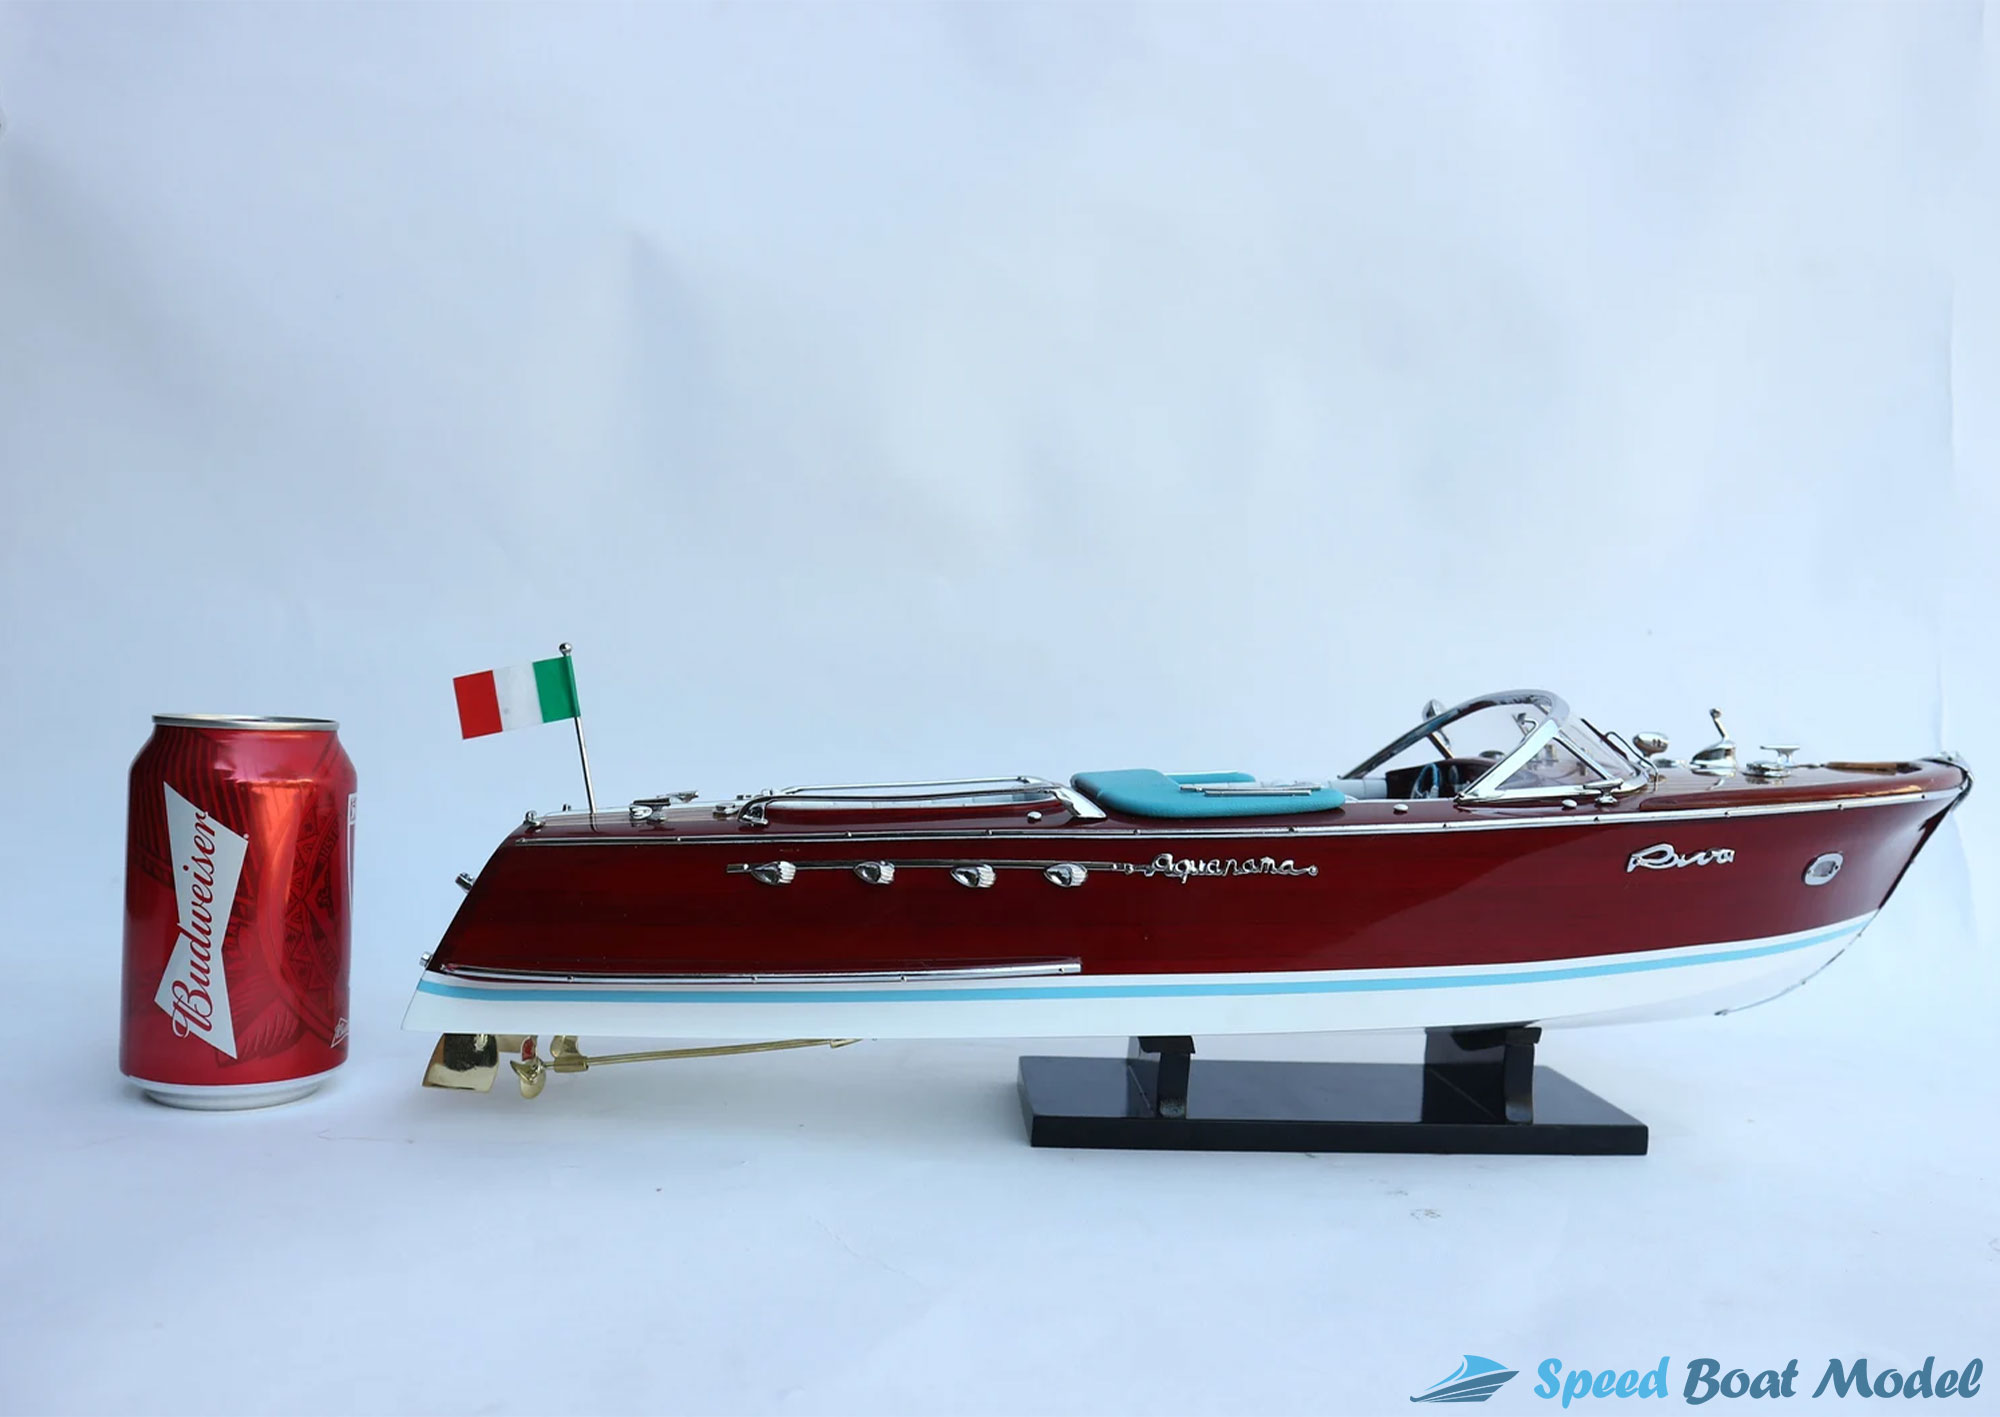 Super Riva Lamborghini Classic Speed Boat Model 34.25"